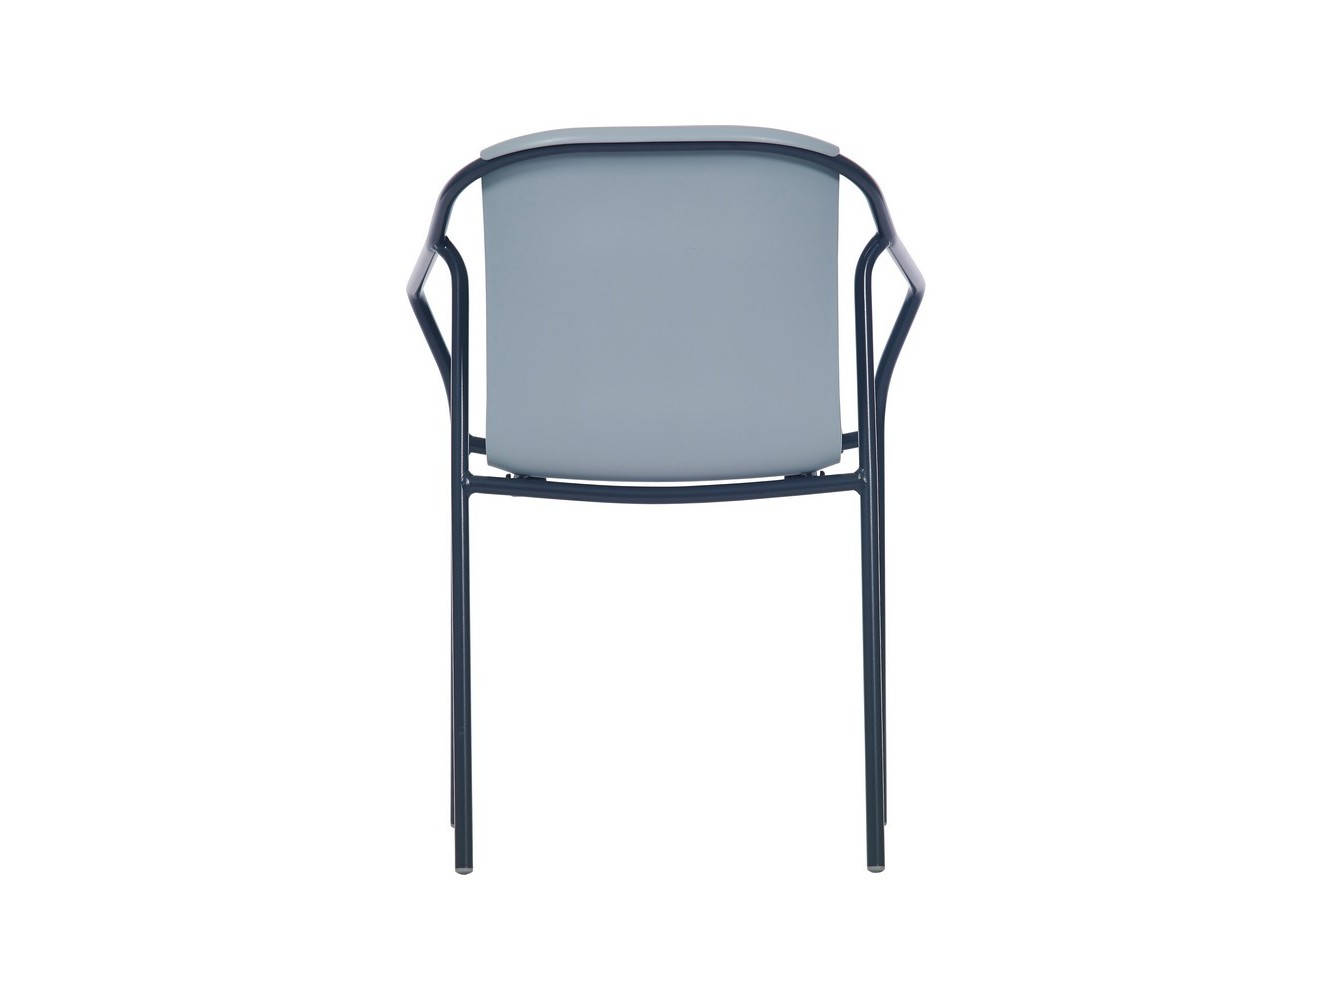 Rod Chair